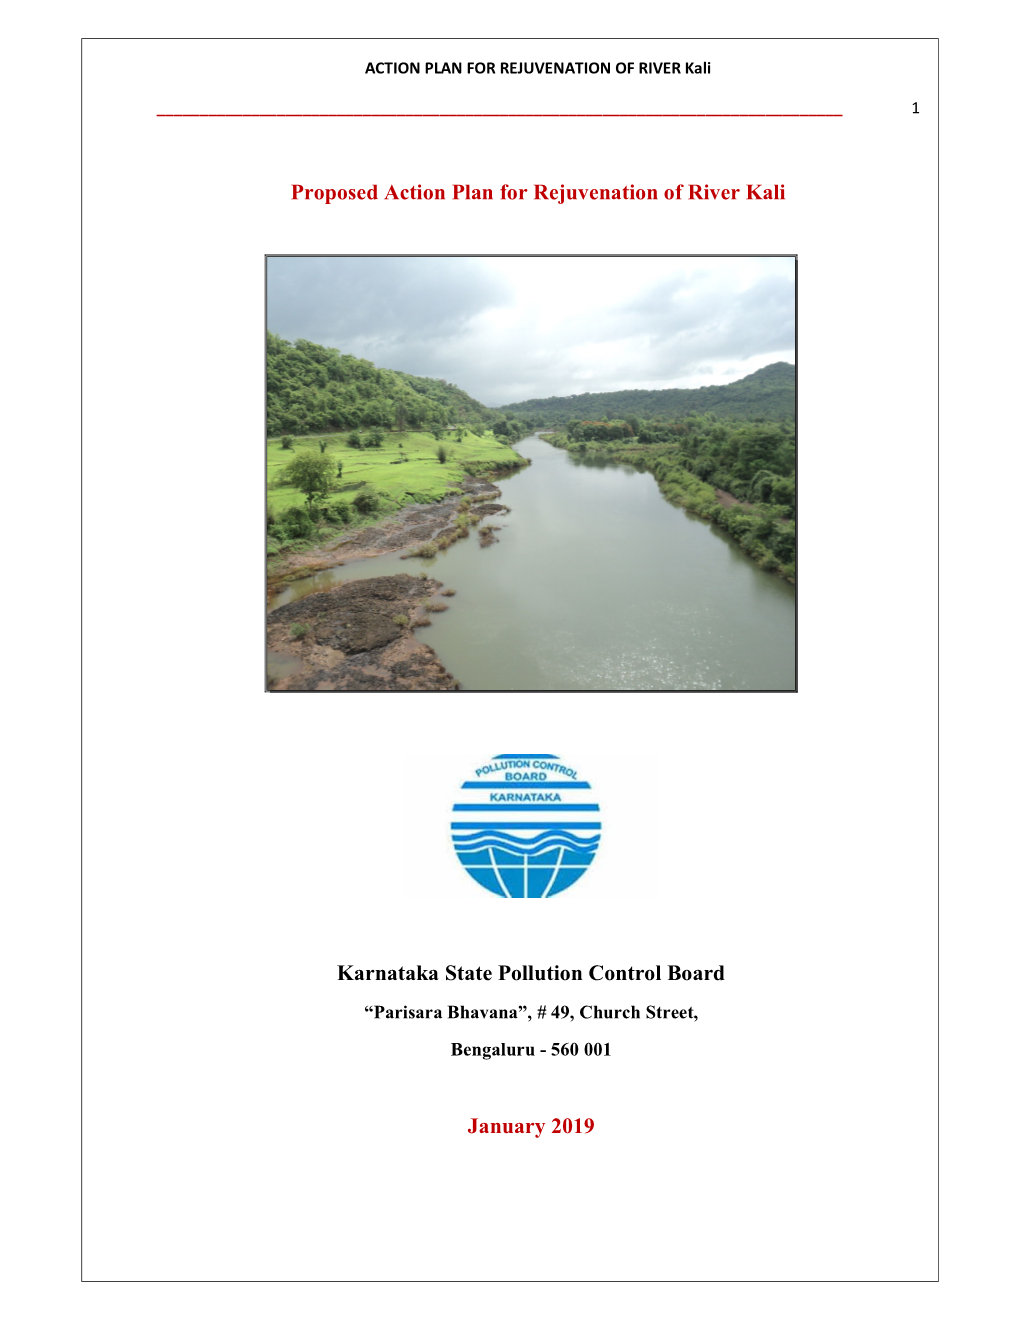 Proposed Action Plan for Rejuvenation of River Kali